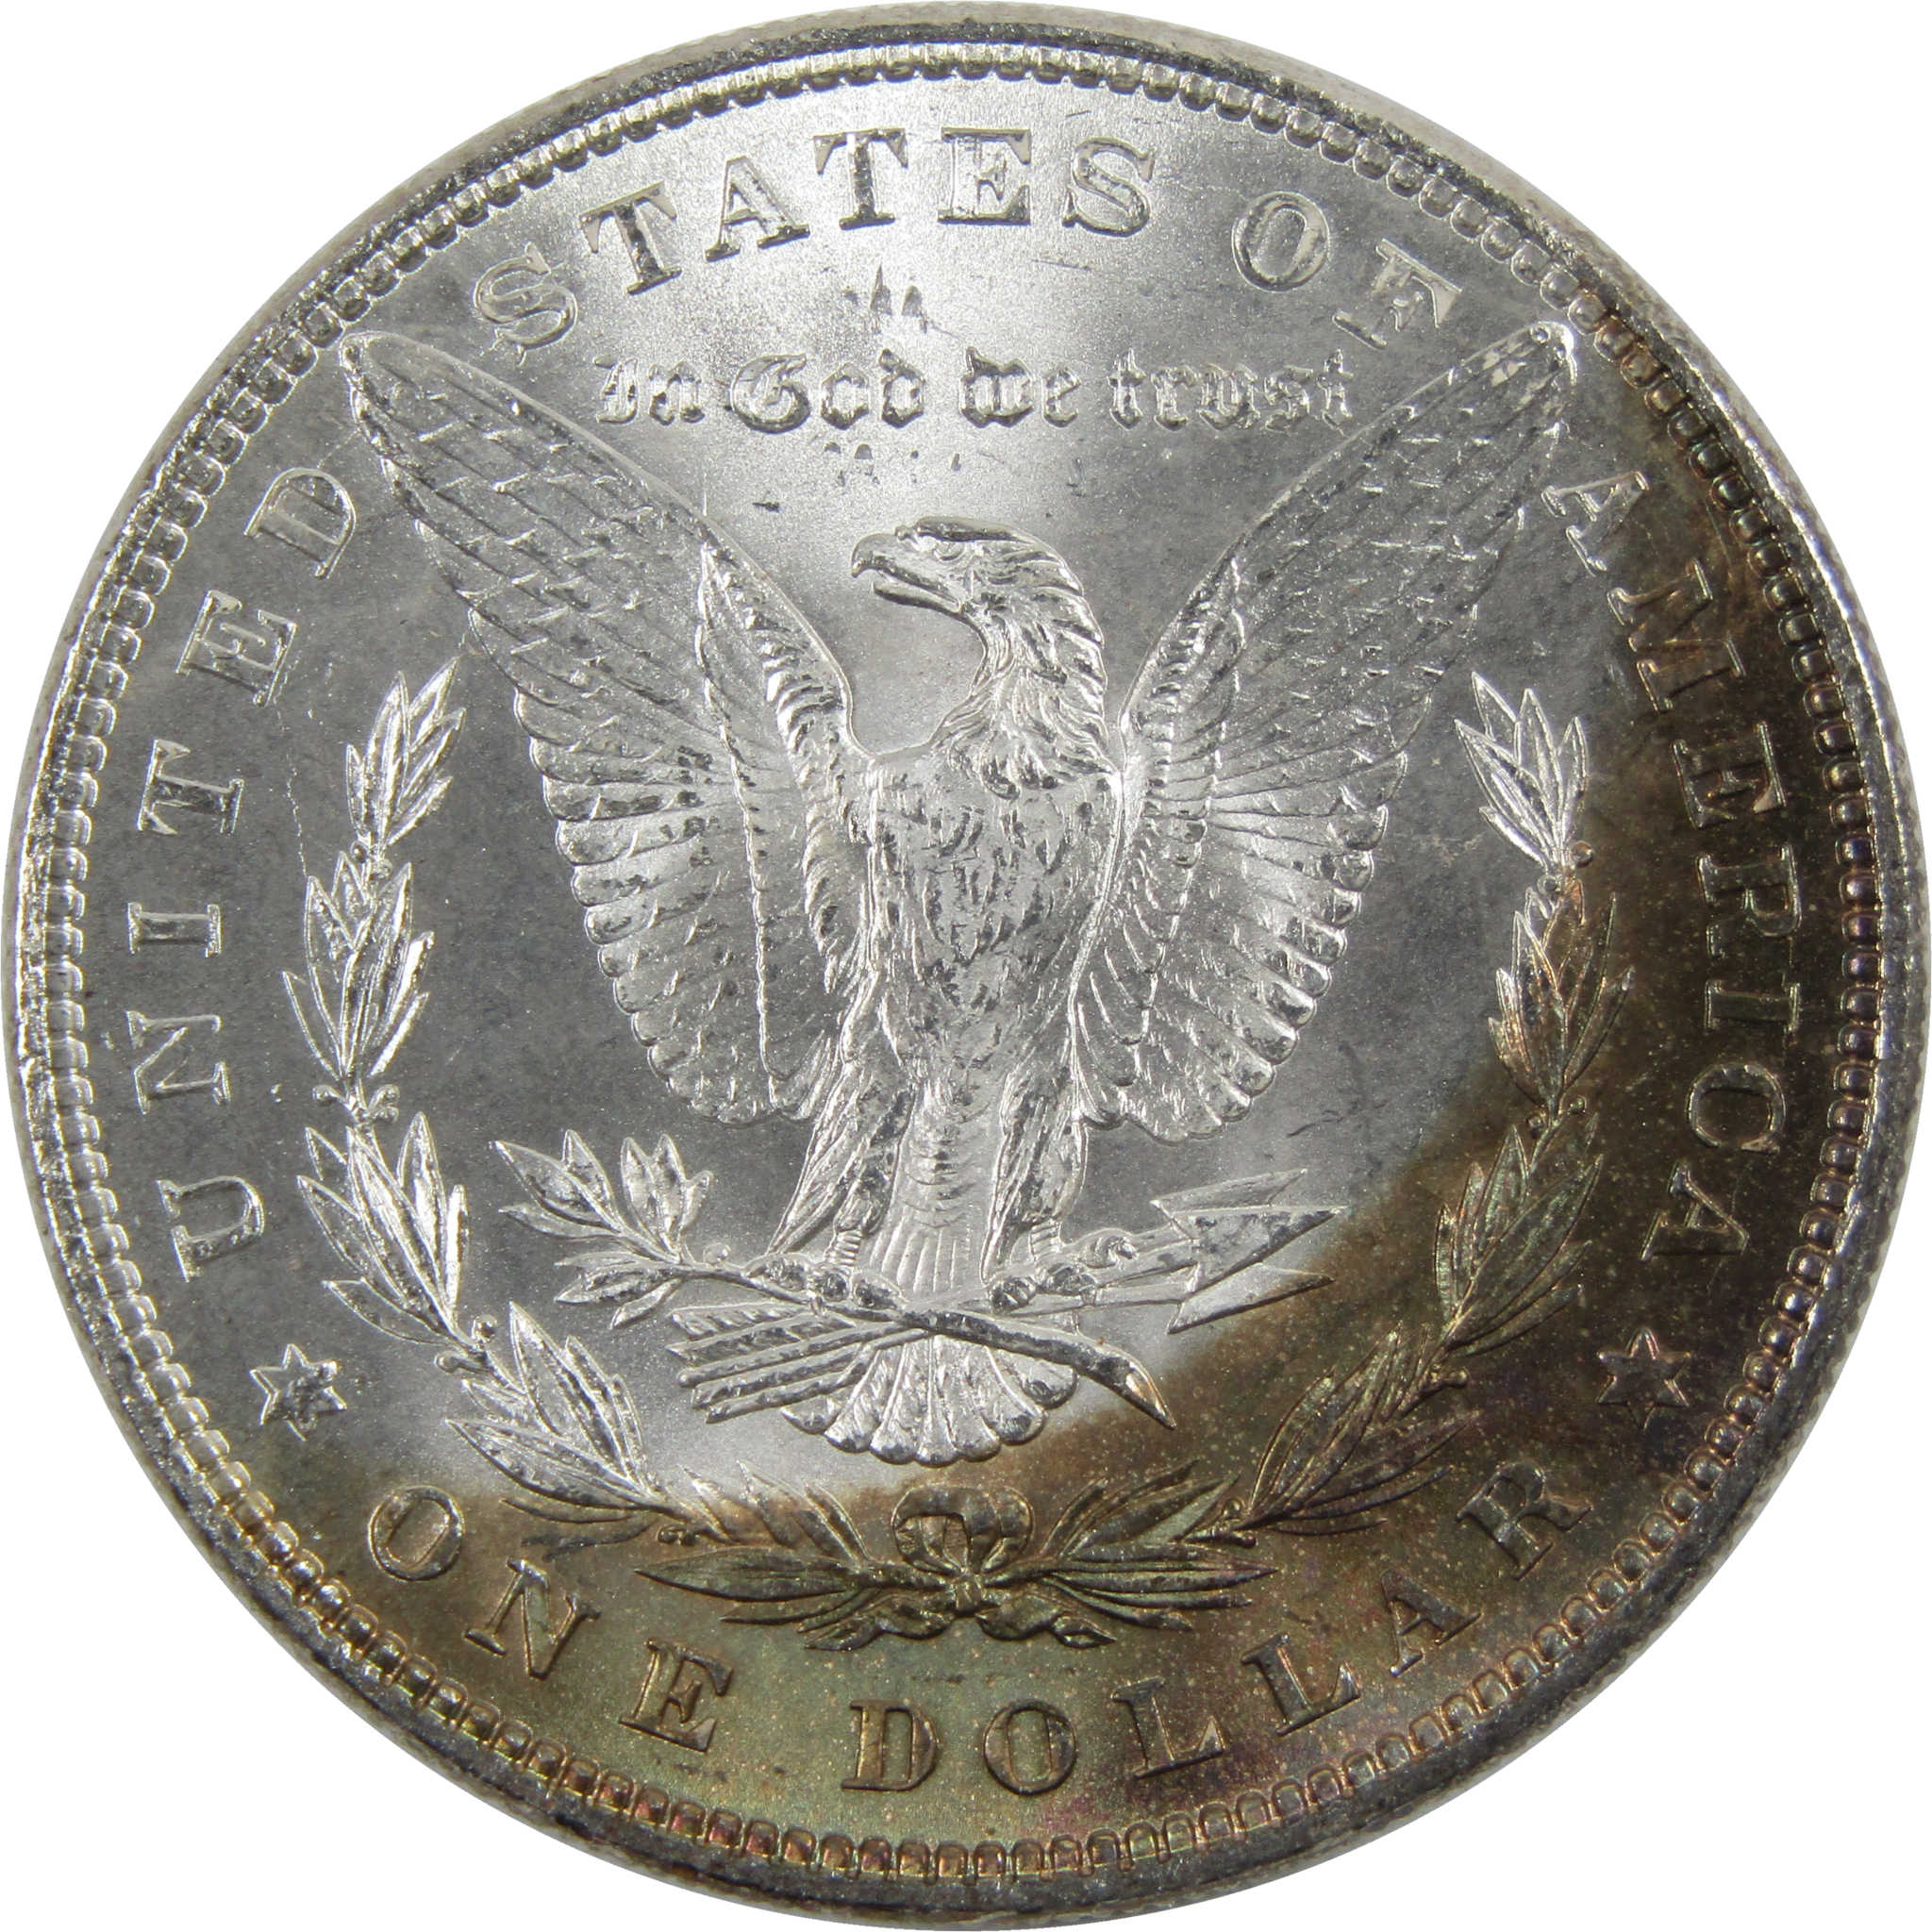 1884 Morgan Dollar BU Uncirculated 90% Silver $1 Coin SKU:I6016 - Morgan coin - Morgan silver dollar - Morgan silver dollar for sale - Profile Coins &amp; Collectibles